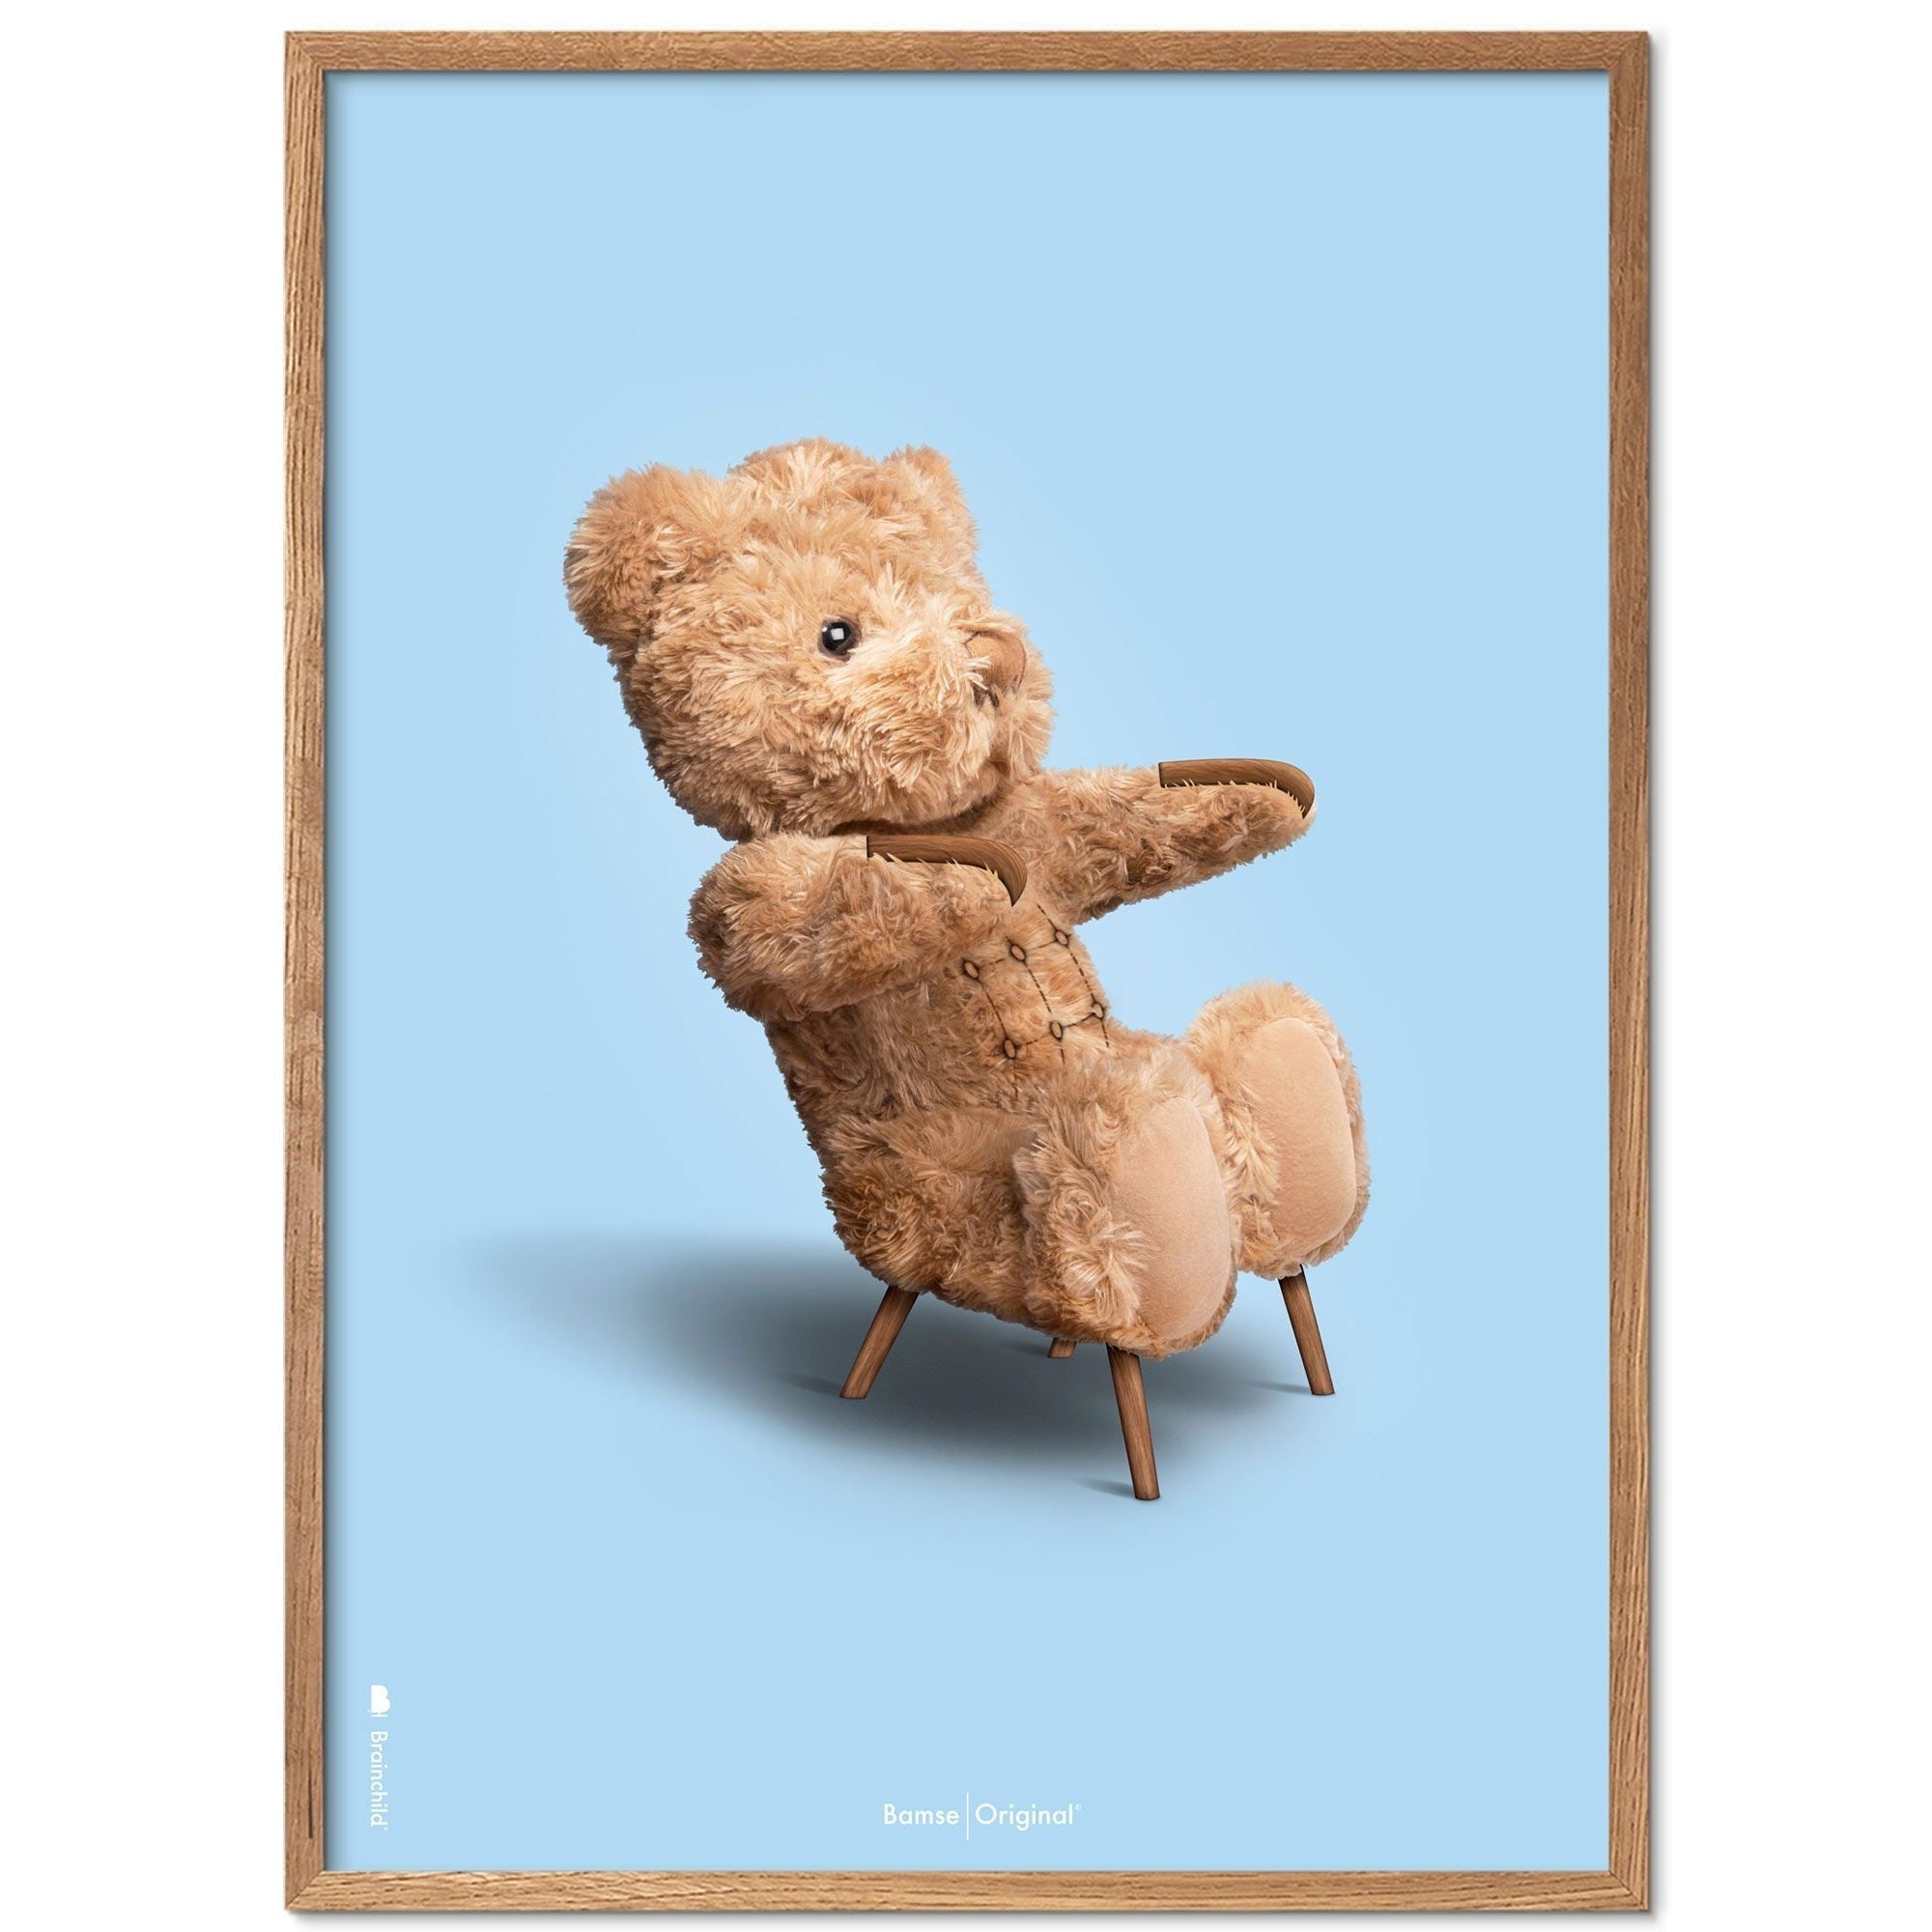 Brainchild Nallebjörn klassisk affischram i lätt träram A5, ljusblå bakgrund